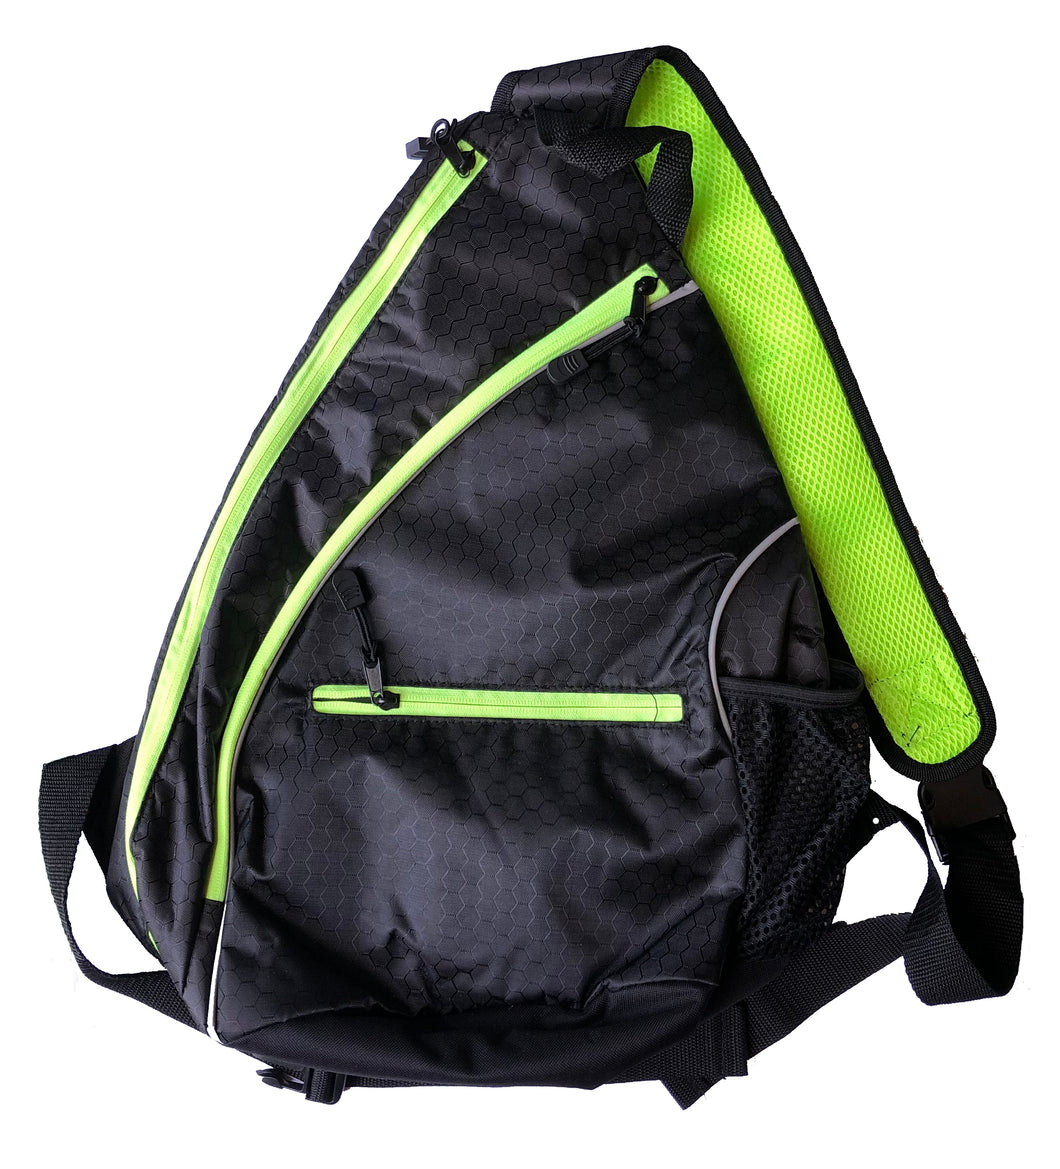 Pickleball Shoulder Bag